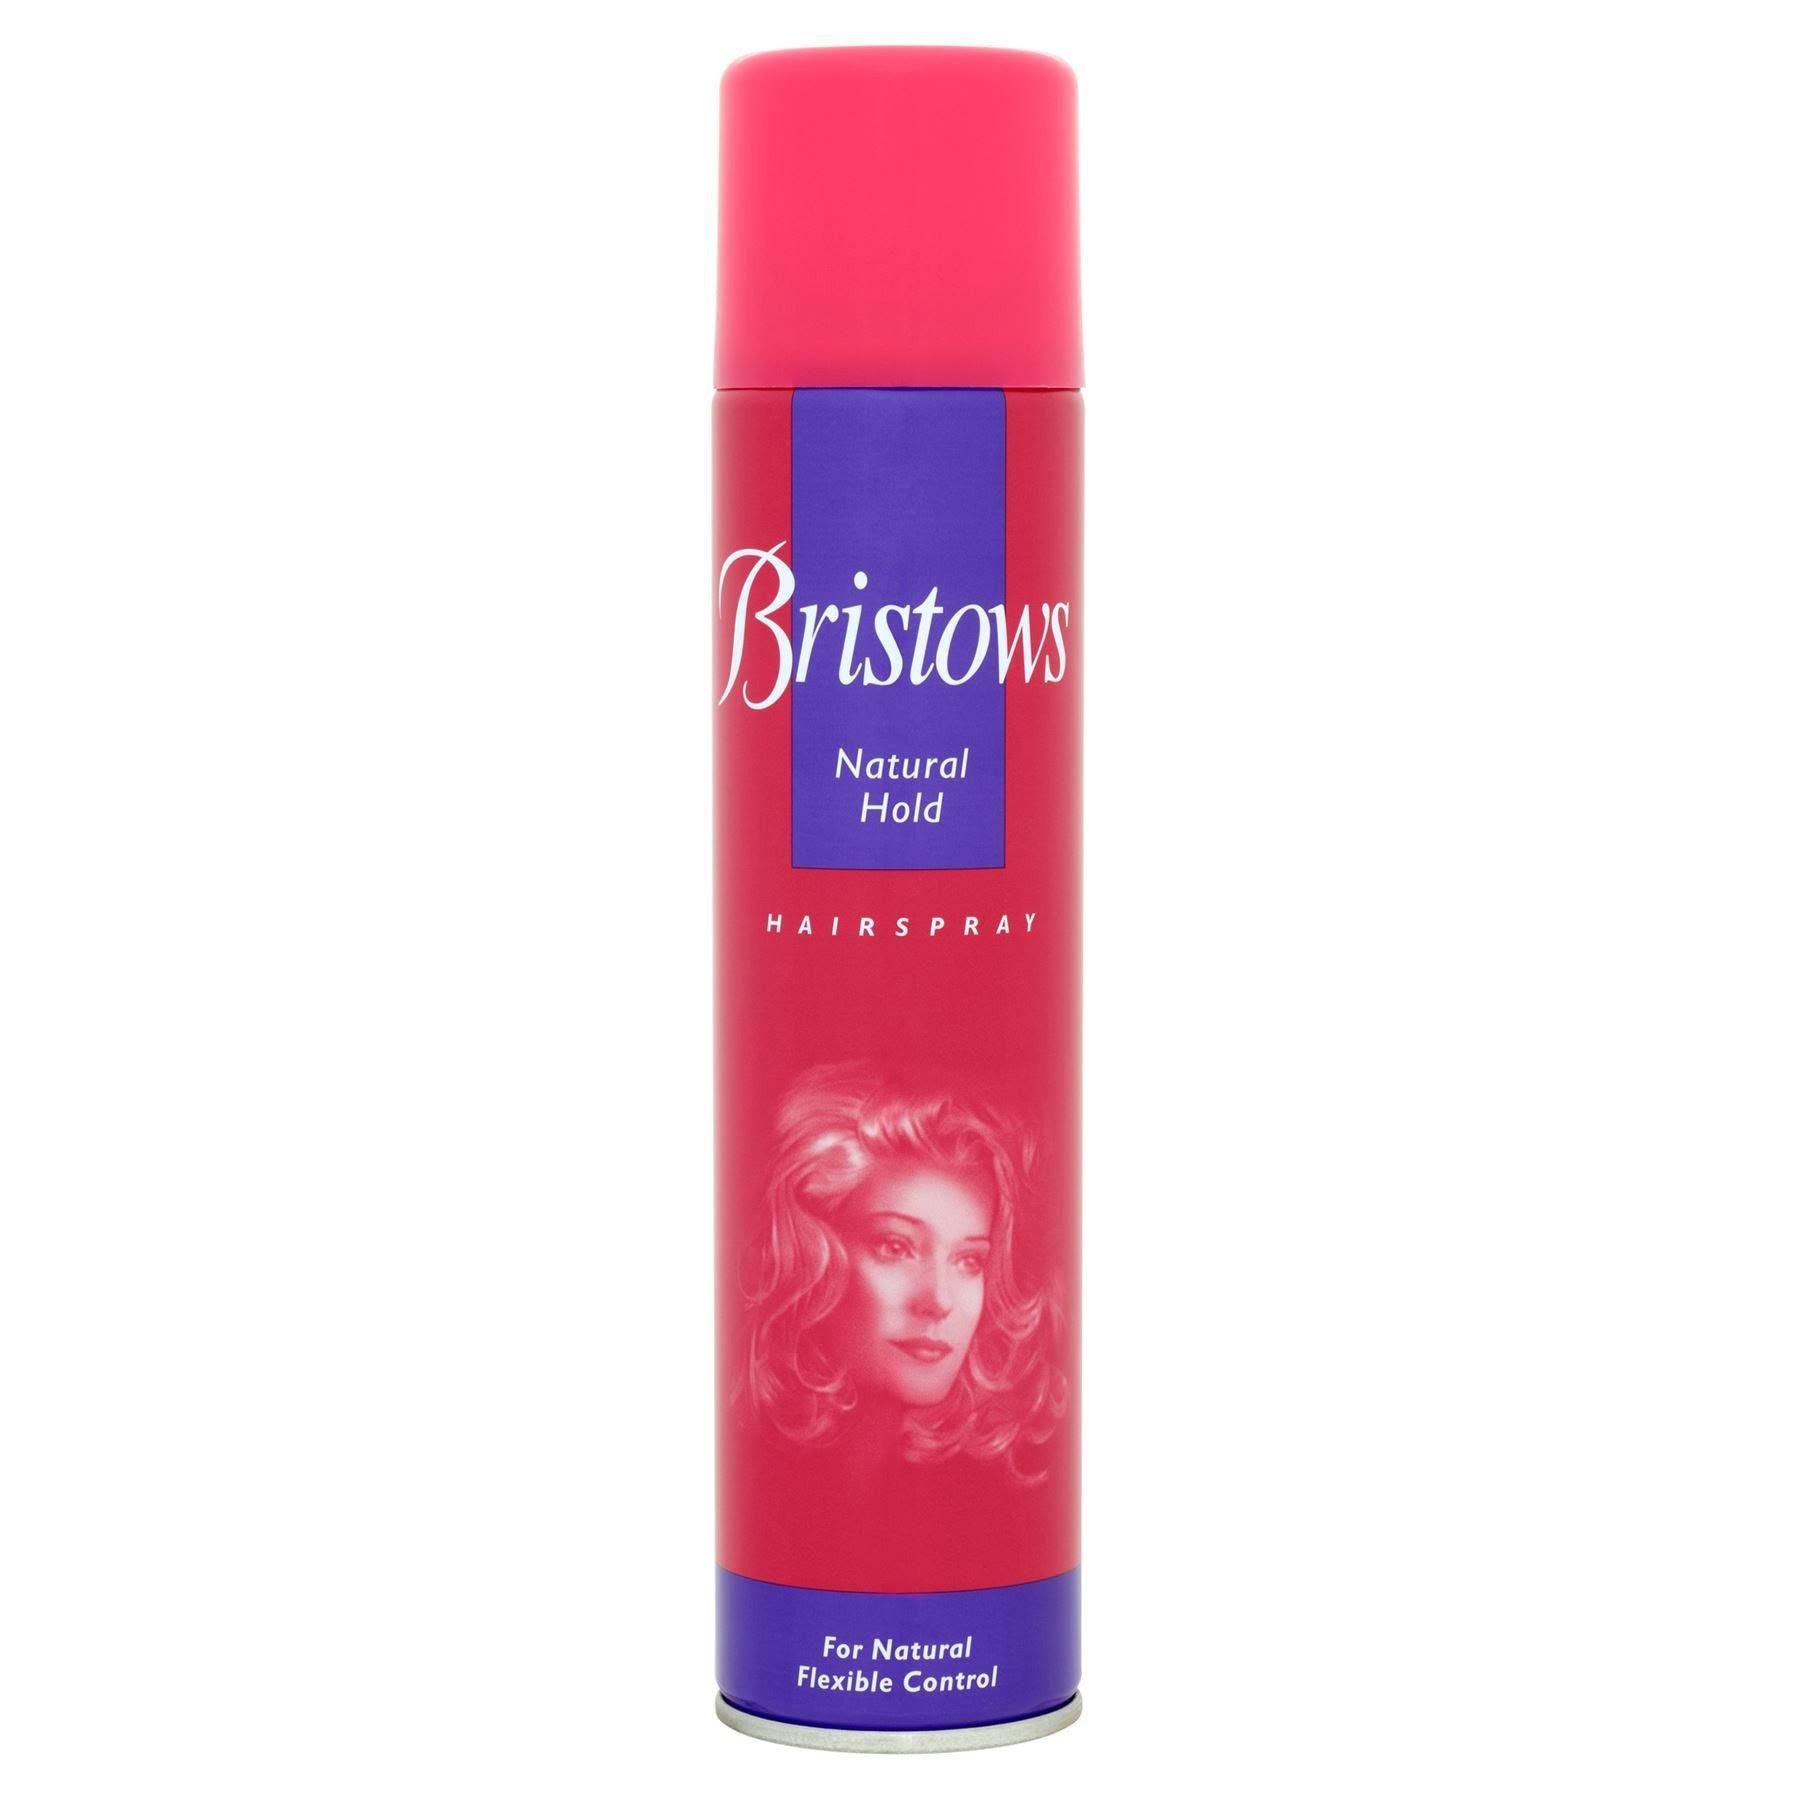 Bristows Hairspray Natural Hold 300ml